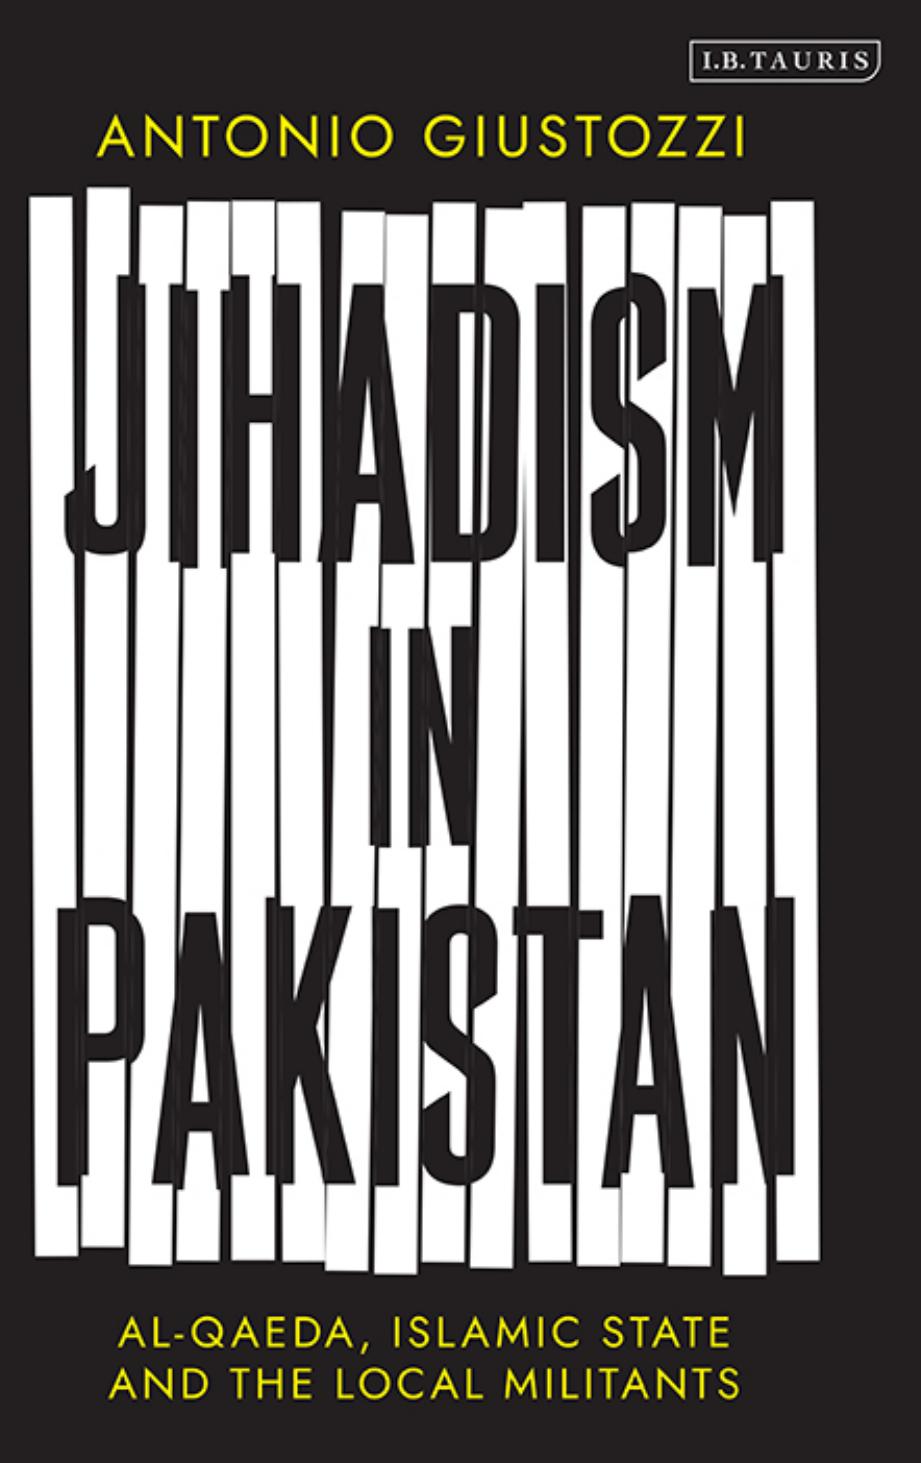 Jihadism in Pakistan: Al-Qaeda, Islamic State and the Local Militants by Antonio Giustozzi